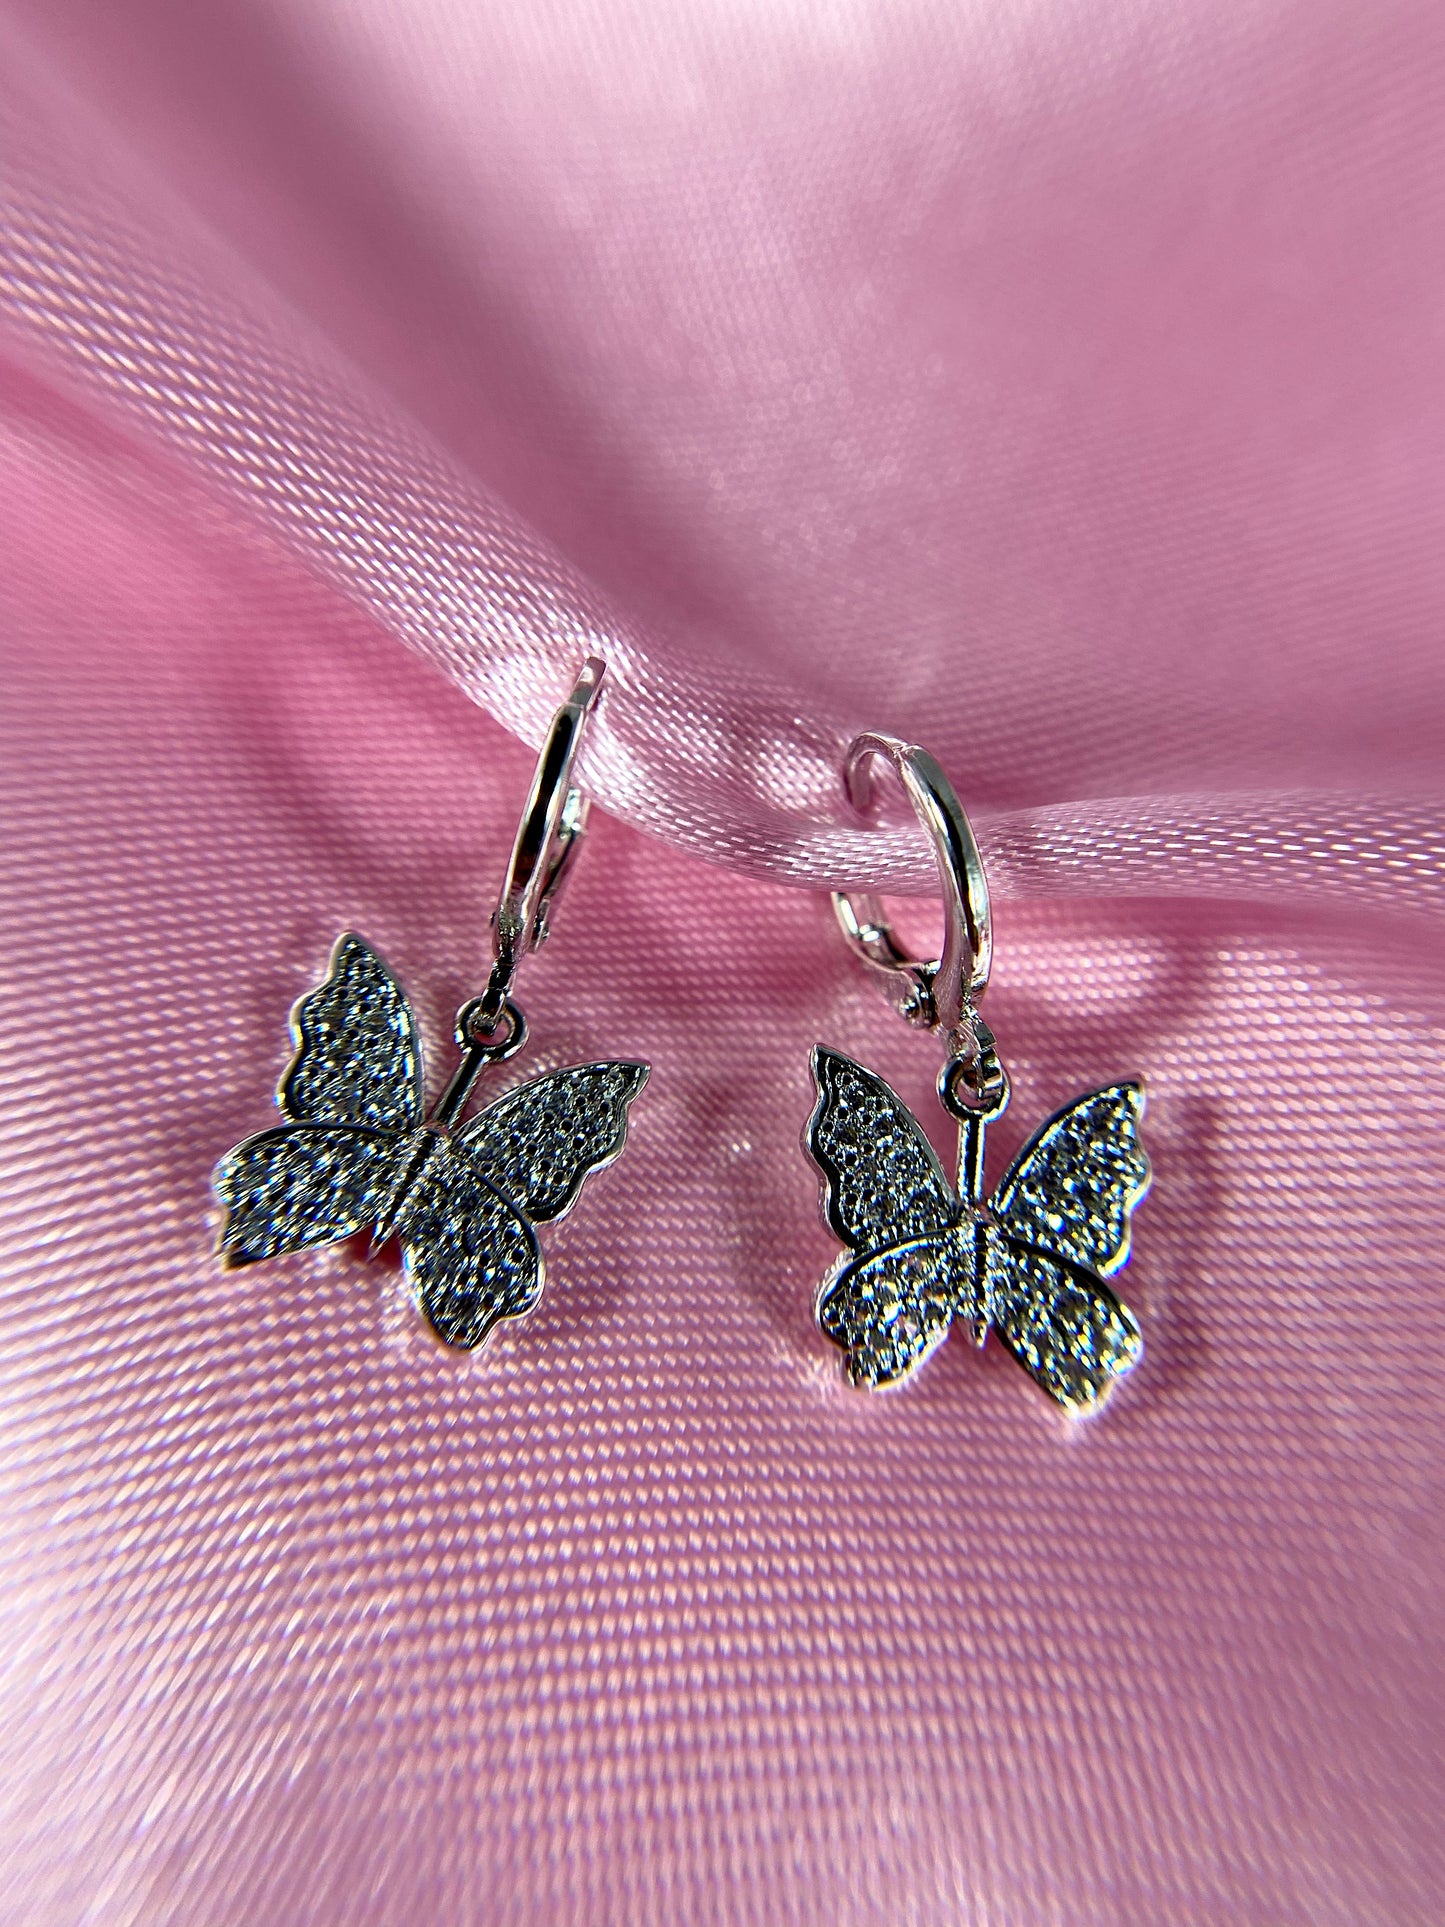 "Bling'd up" butterfly earrings